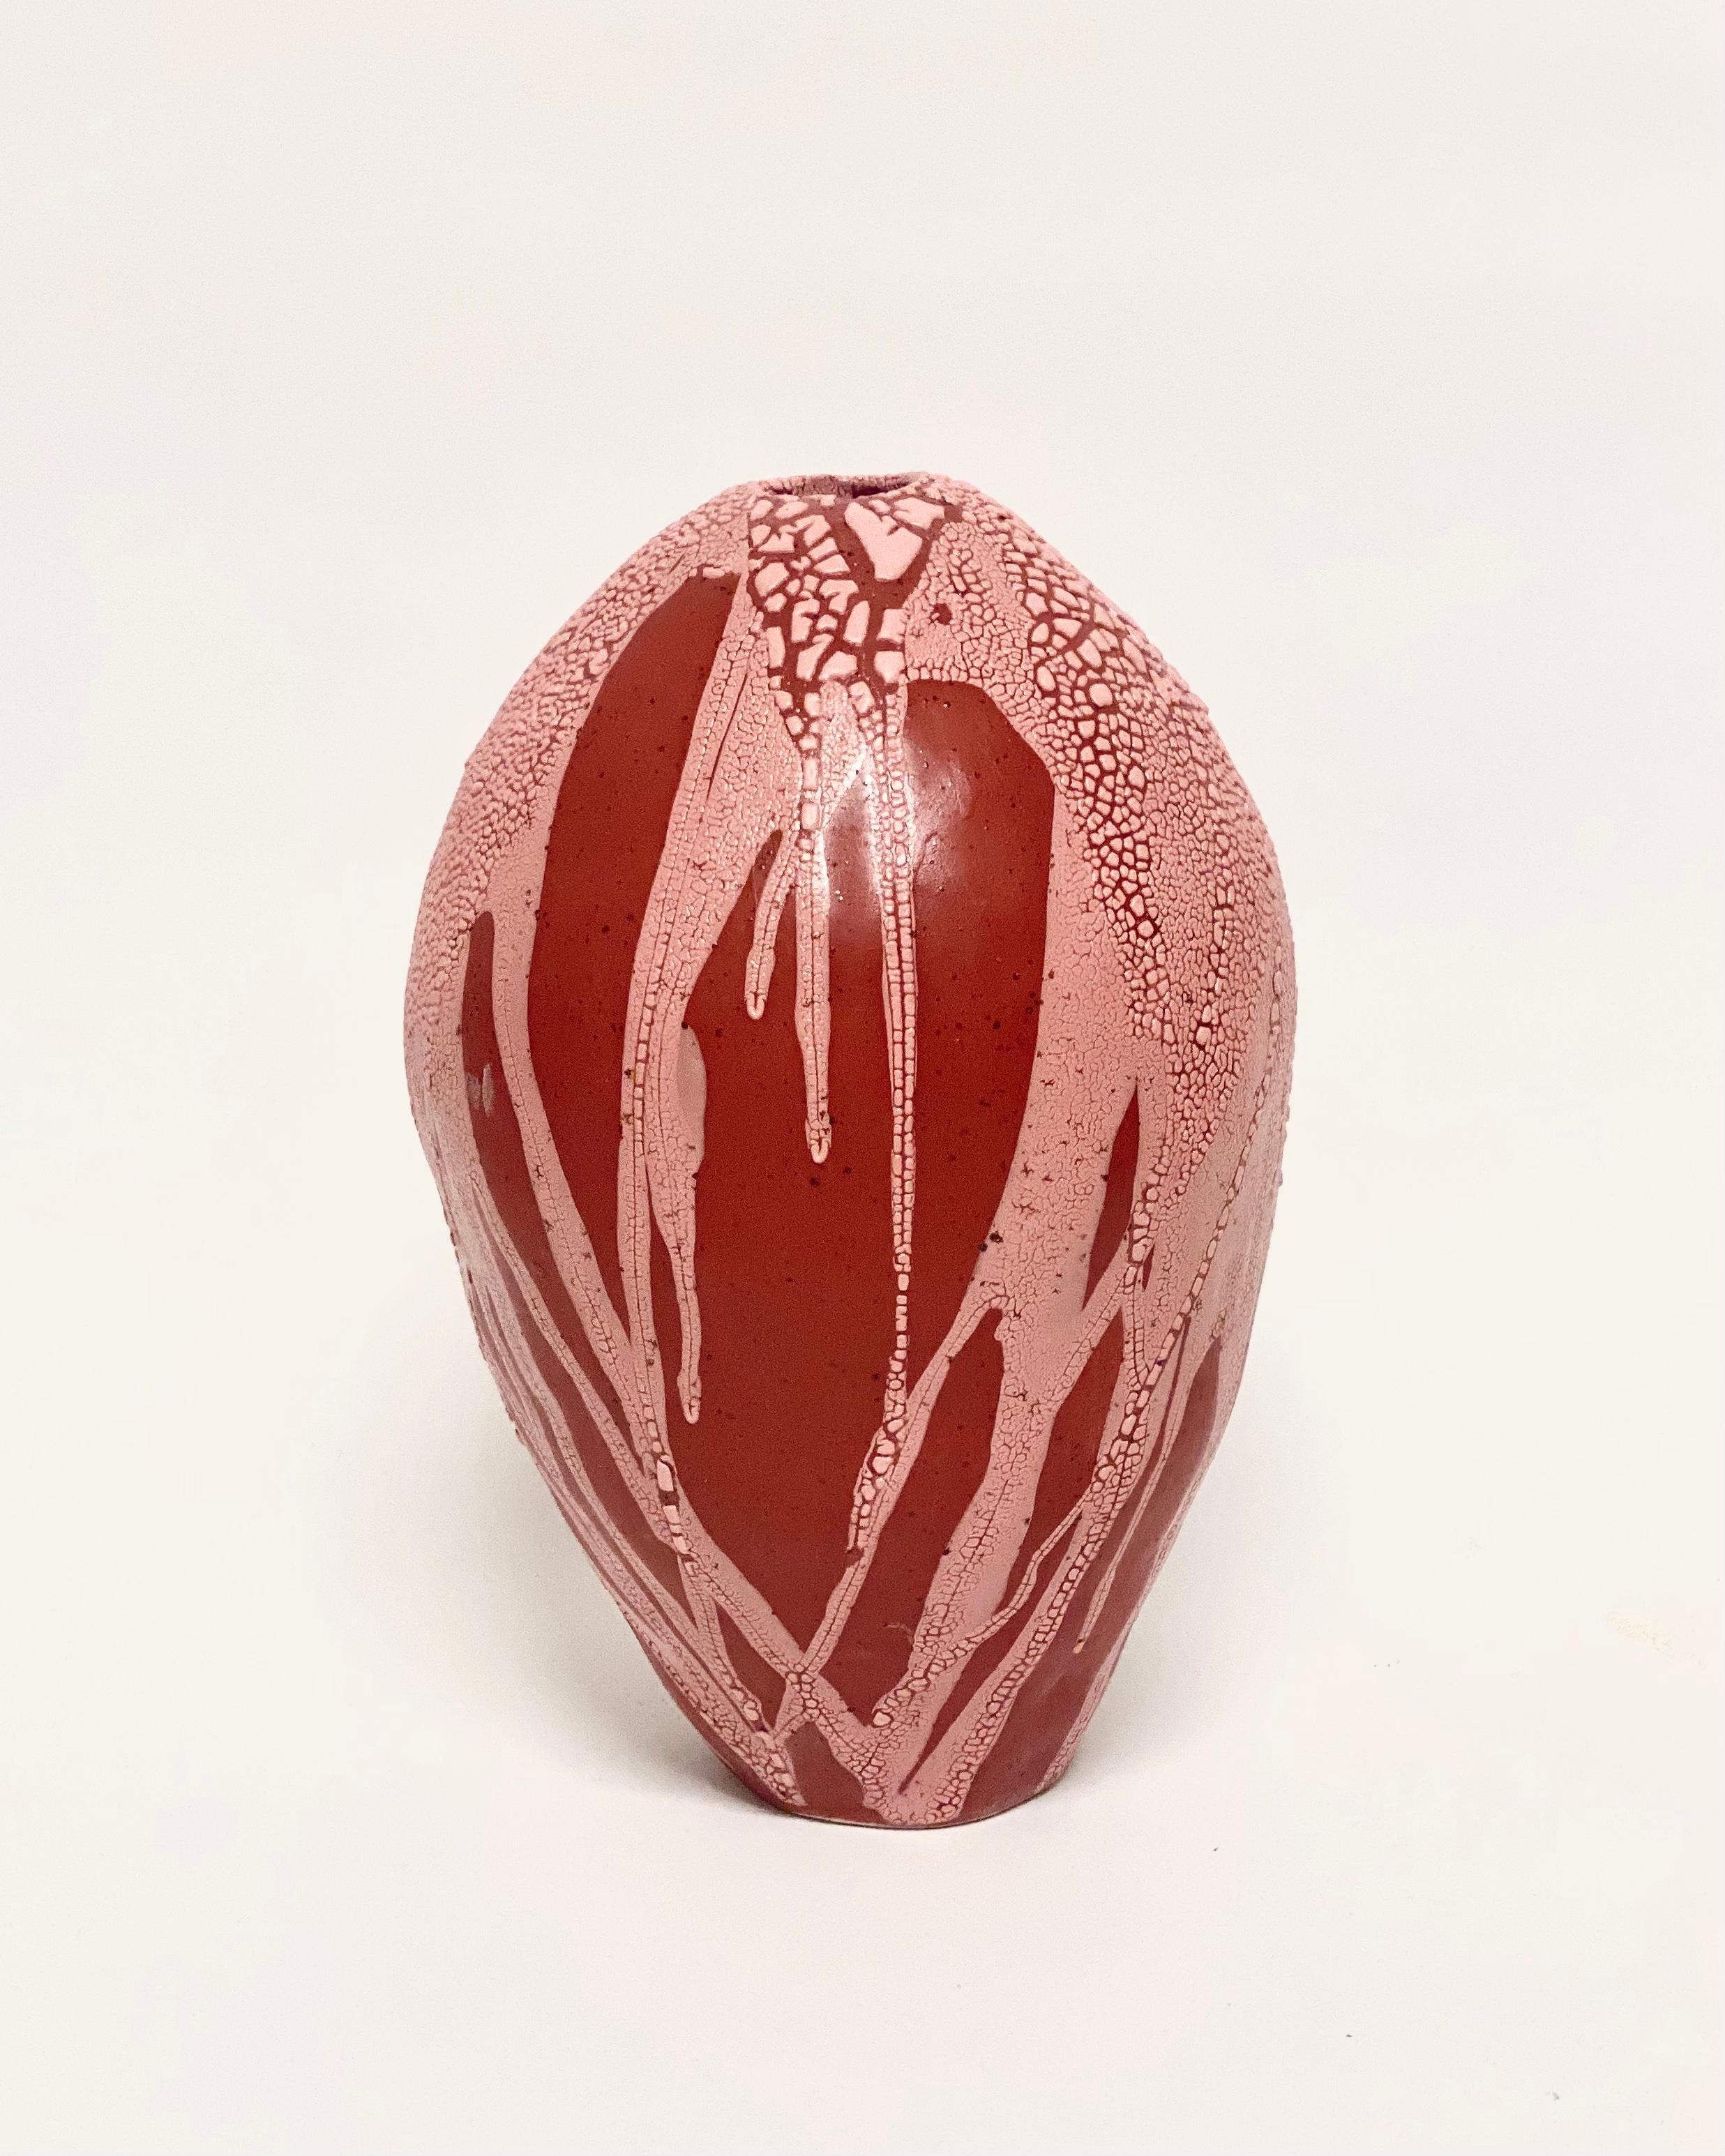 Rot-rosa Drachenei-Vase von Astrid Öhman
Handgefertigt
Abmessungen: D 19 x H 31 cm
MATERIALIEN: Keramik, Steingut, von Hand modelliert, glasiert und bei hoher Temperatur gebrannt.

Keramiken von Astrid Öhman. Jedes Stück ist handgefertigt und